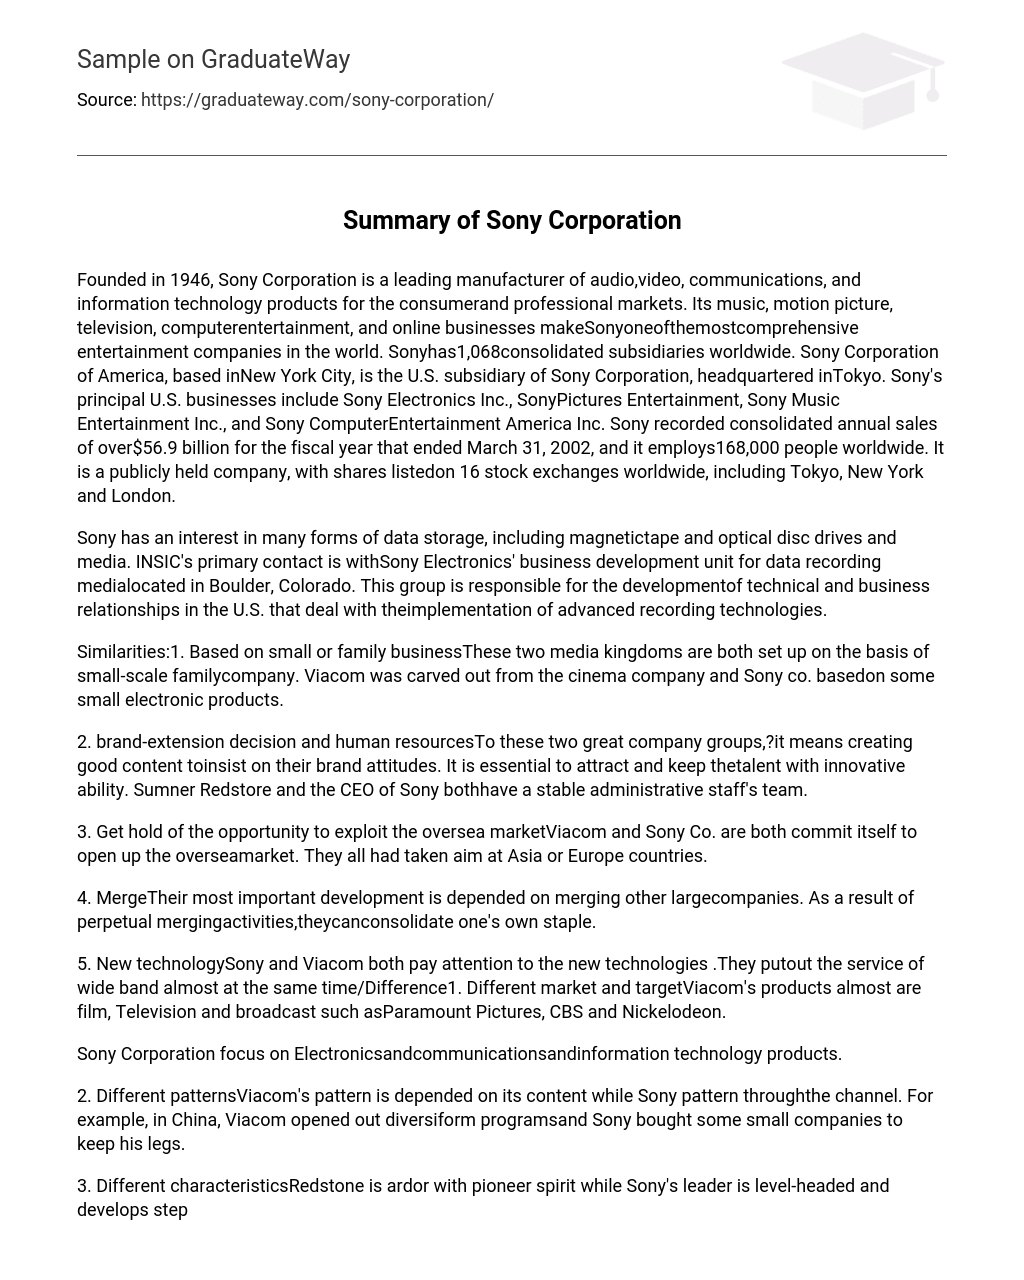 Summary of Sony Corporation